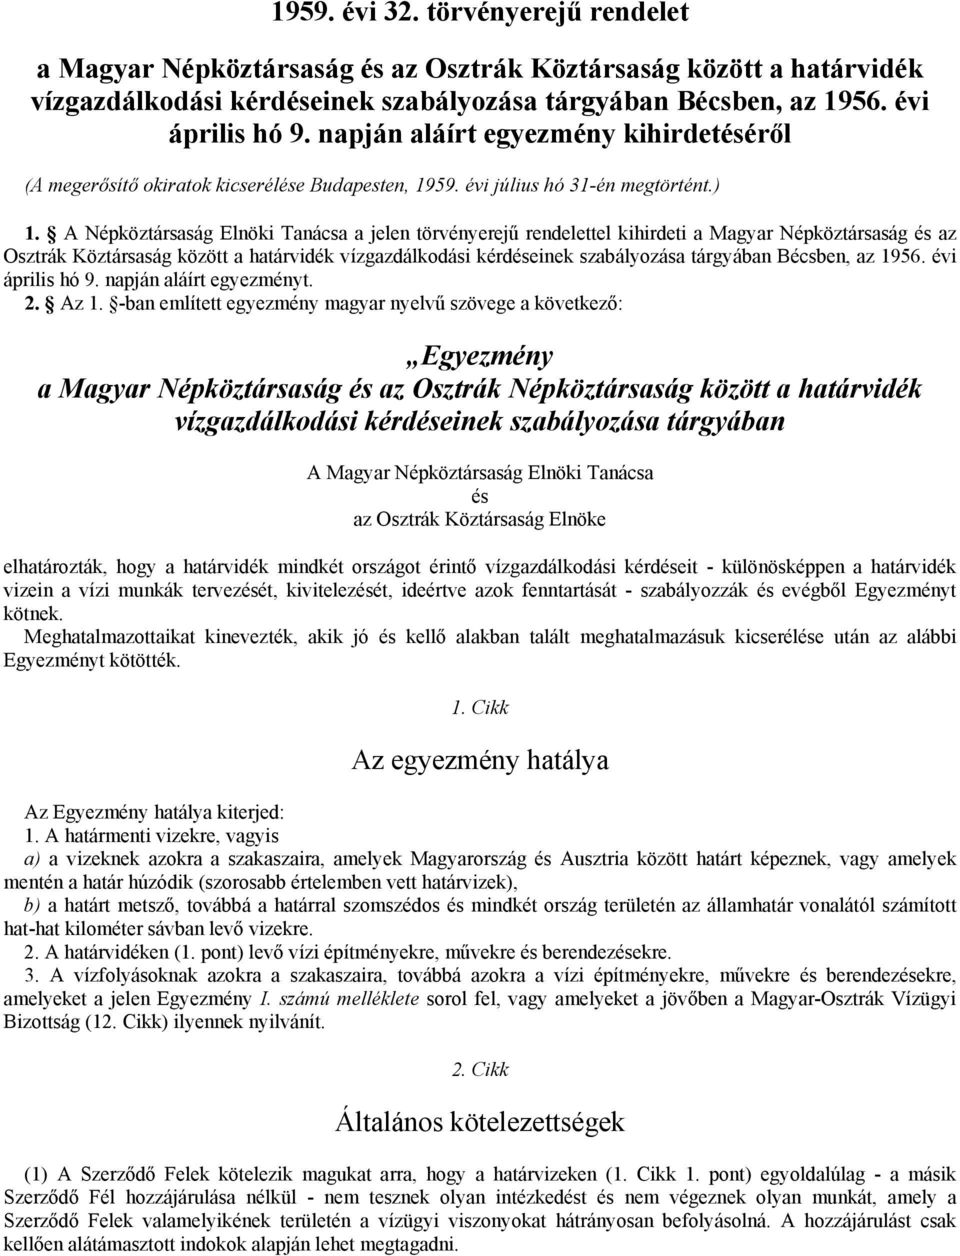 A Népköztársaság Elnöki Tanácsa a jelen törvényerejű rendelettel kihirdeti a Magyar Népköztársaság és az Osztrák Köztársaság között a határvidék vízgazdálkodási kérdéseinek szabályozása tárgyában